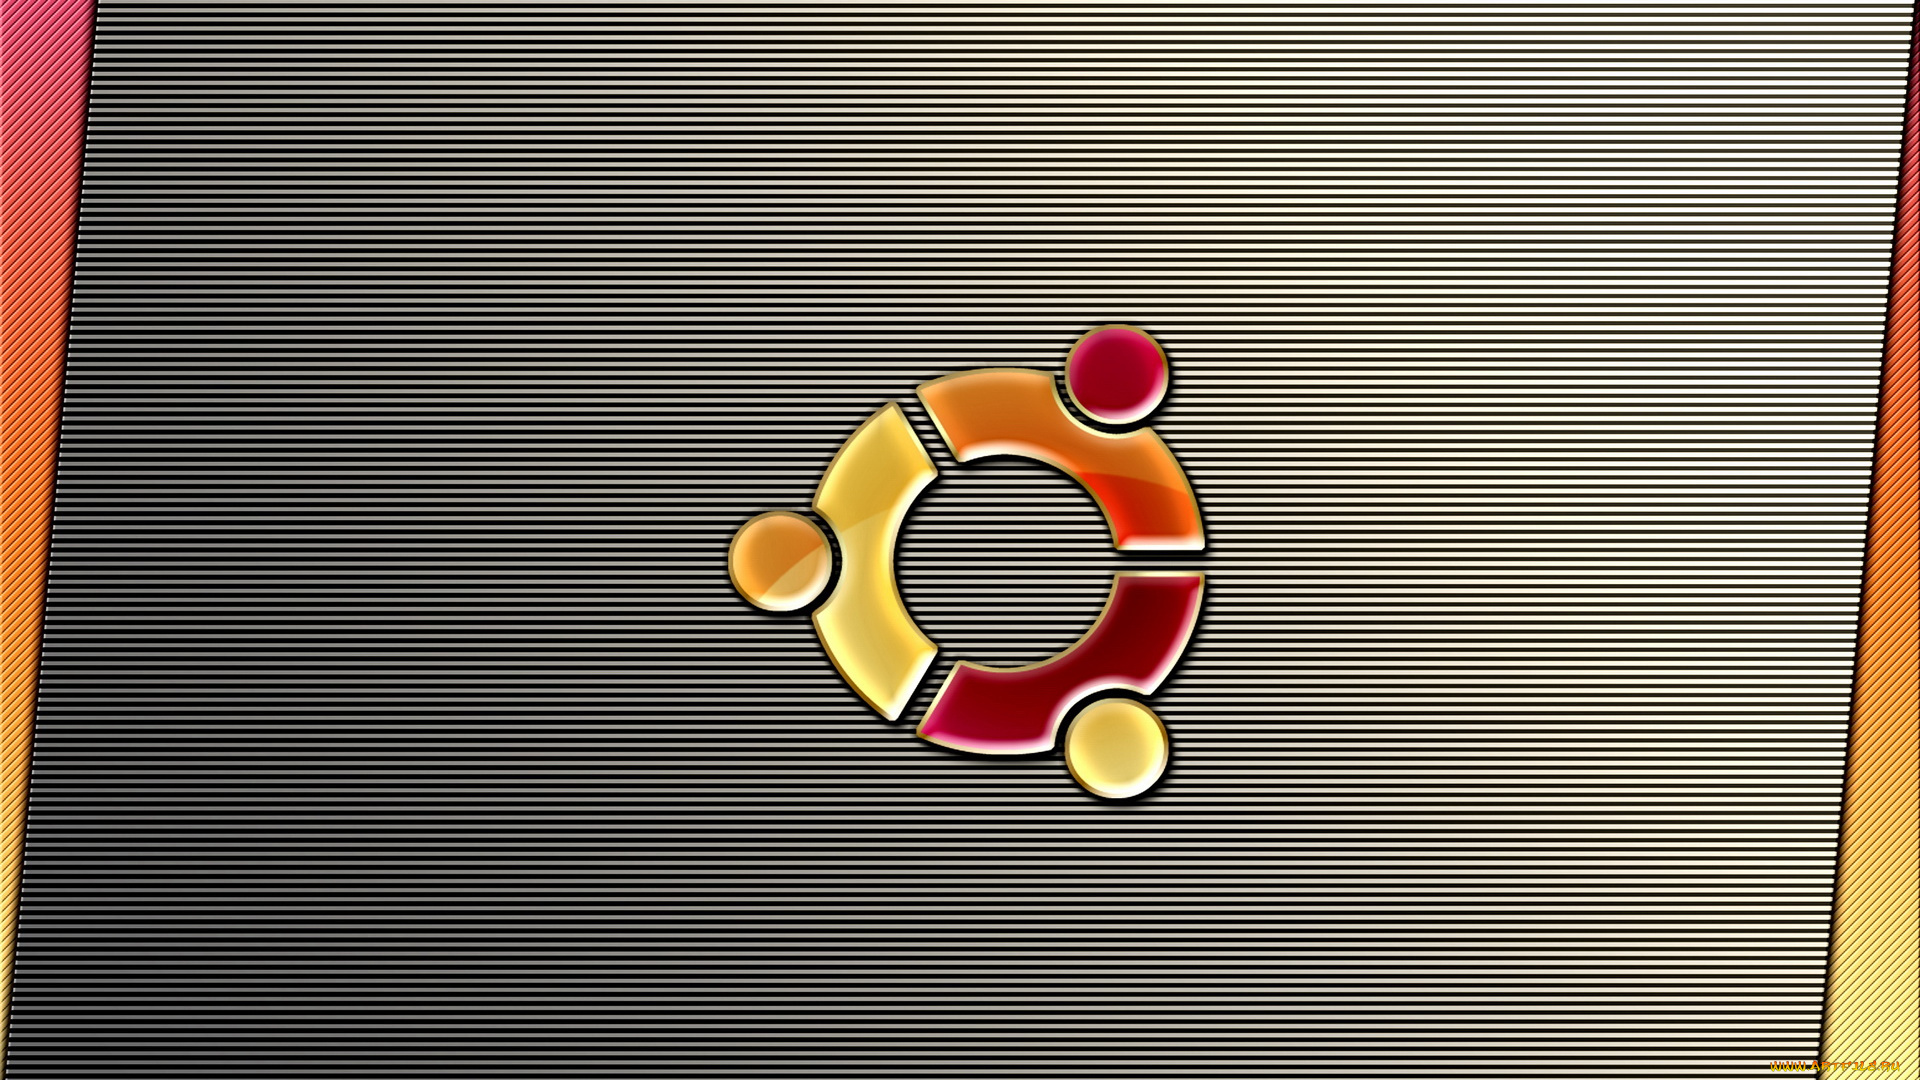 компьютеры, ubuntu, linux, сетка, линии, логотип